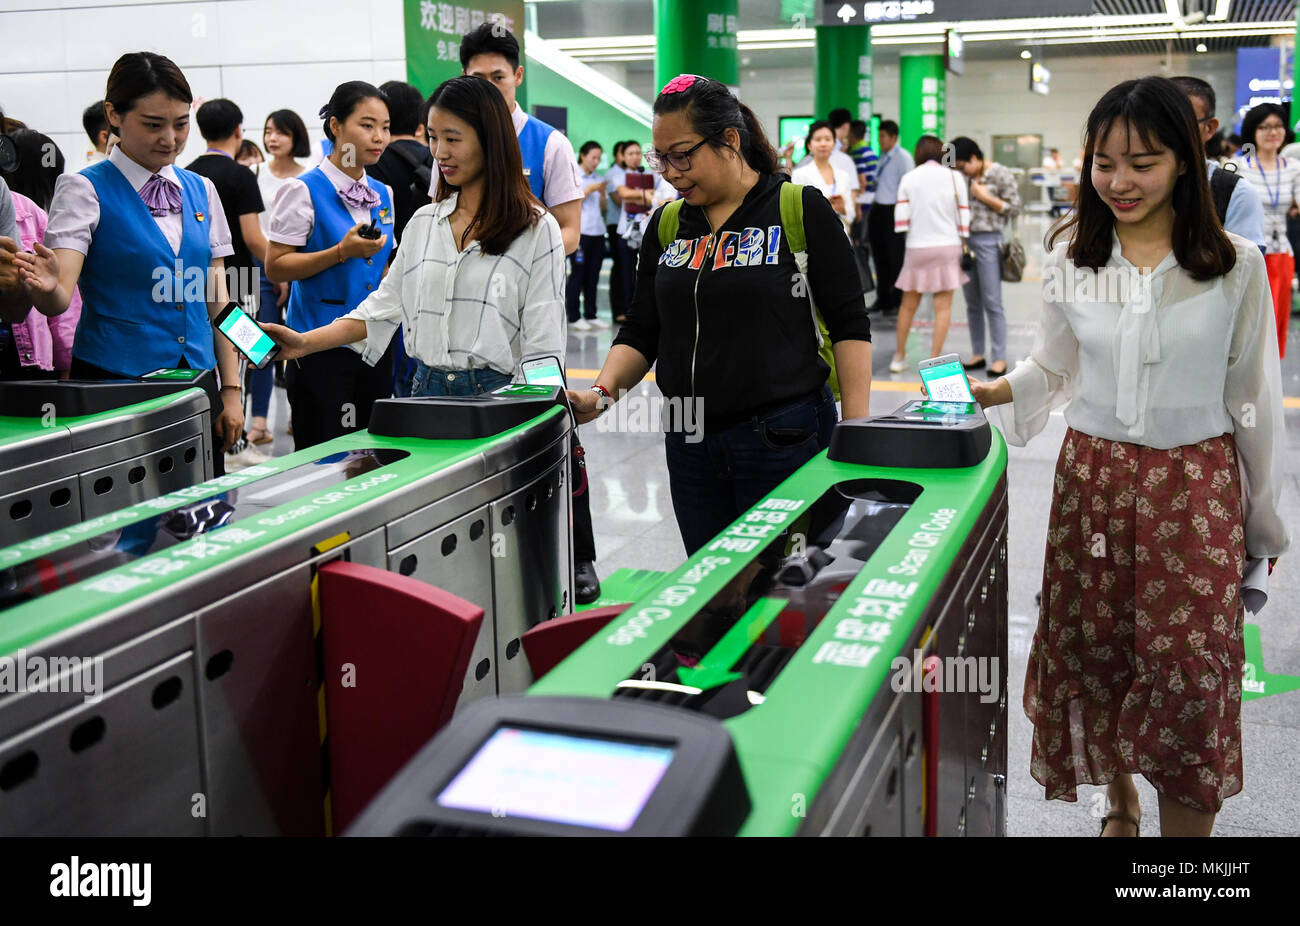 (180508) -- SHENZHEN, 8 mai 2018 (Xinhua) -- Les passagers ont généré par le smartphone QR codes scannés par les distributeurs de billets avant d'entrer dans la station de métro de Shenzhen Futian à Shenzhen, province du Guangdong en Chine du sud, le 8 mai 2018. Les passagers sont autorisés à utiliser les codes QR comme des billets électroniques pour saisir toutes les stations de métro de Shenzhen à partir de mardi. (Xinhua/Mao Siqian) (LMM) Banque D'Images